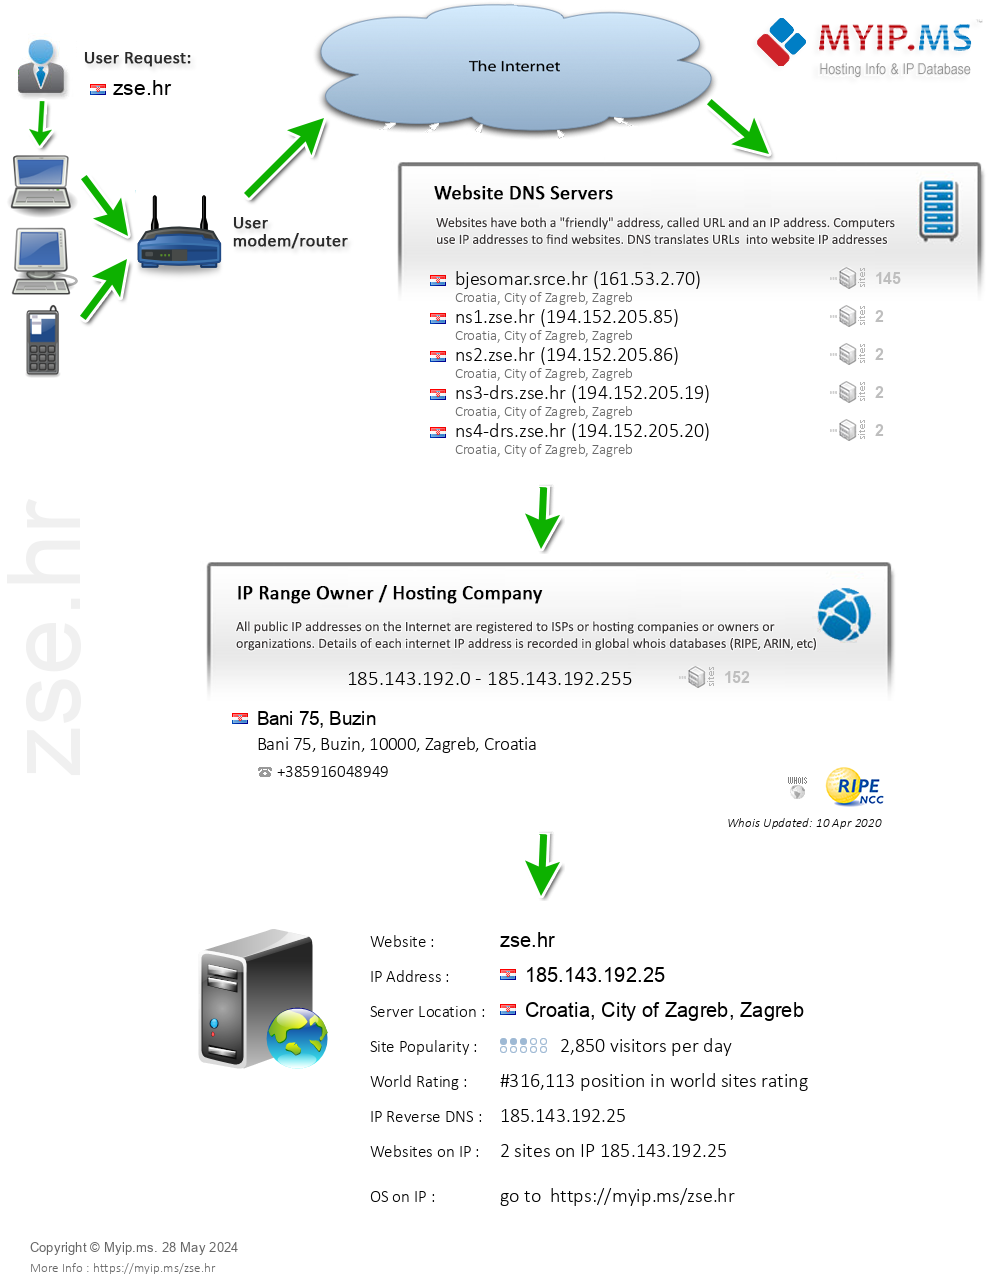 Zse.hr - Website Hosting Visual IP Diagram